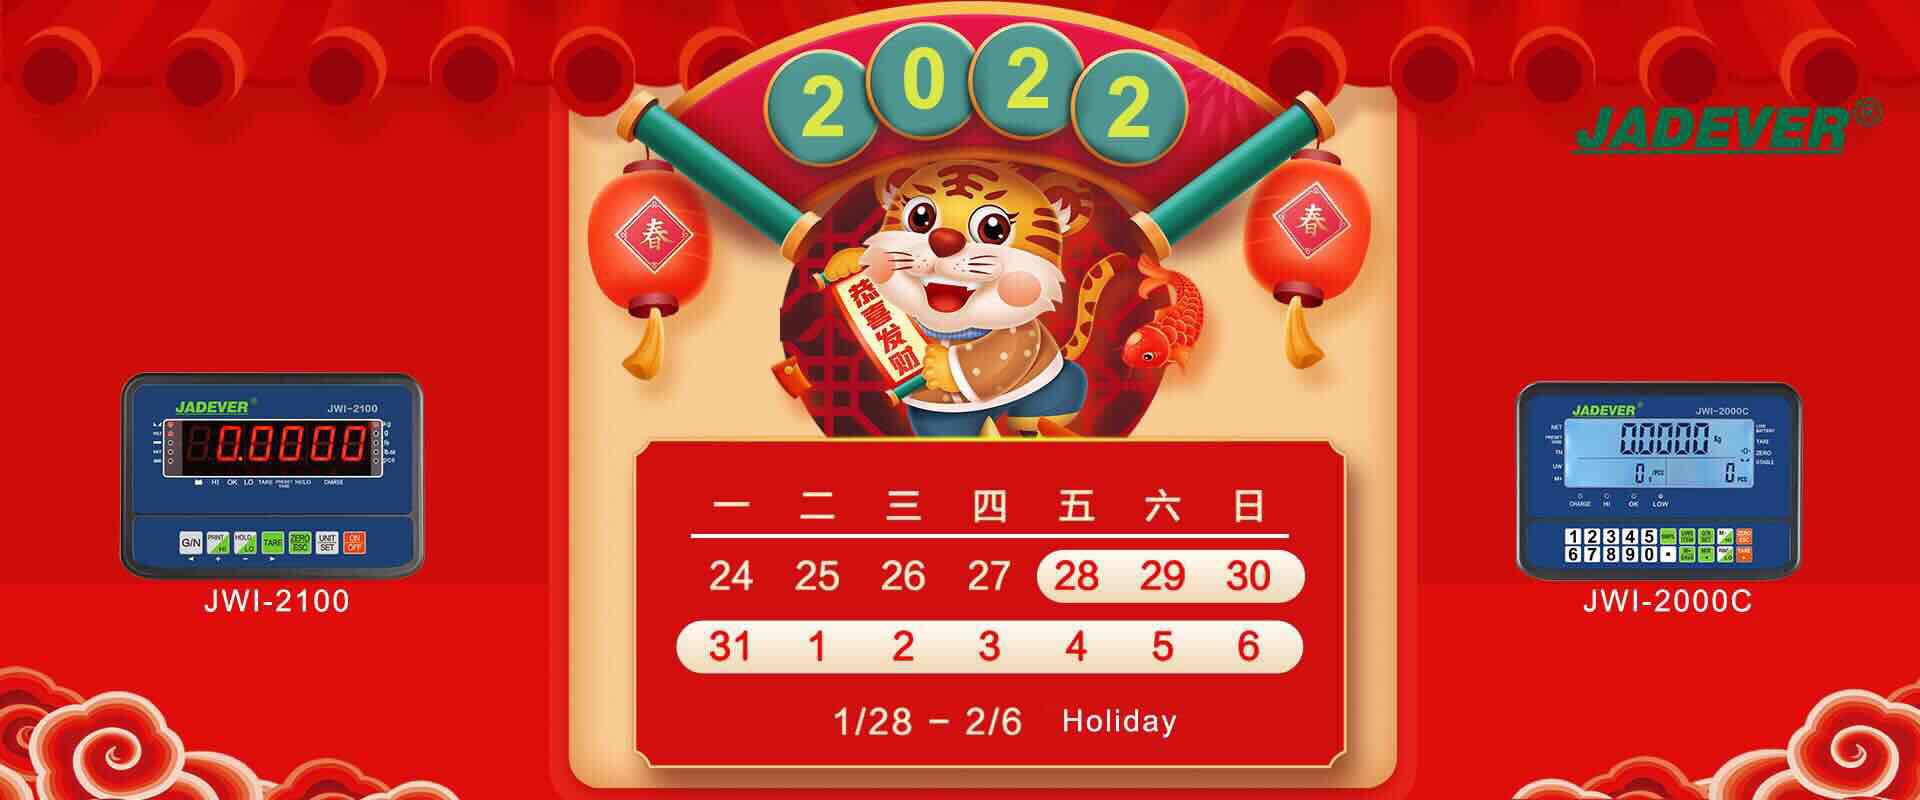 إشعار عطلة - العام القمري الصيني الجديد 2022